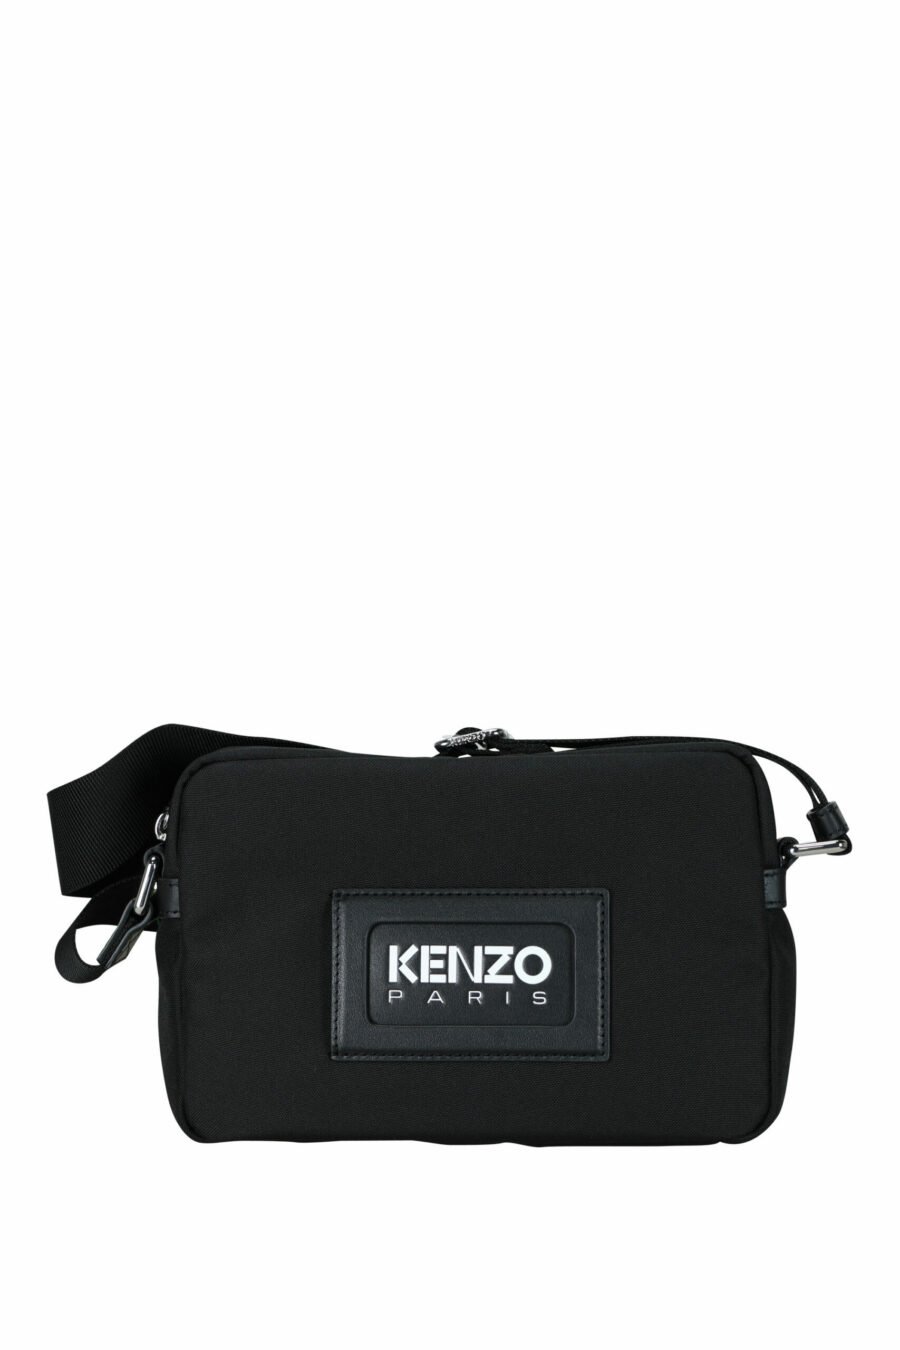 Bolso cruzado negro con logo "kenzography" - 3612230580084 scaled